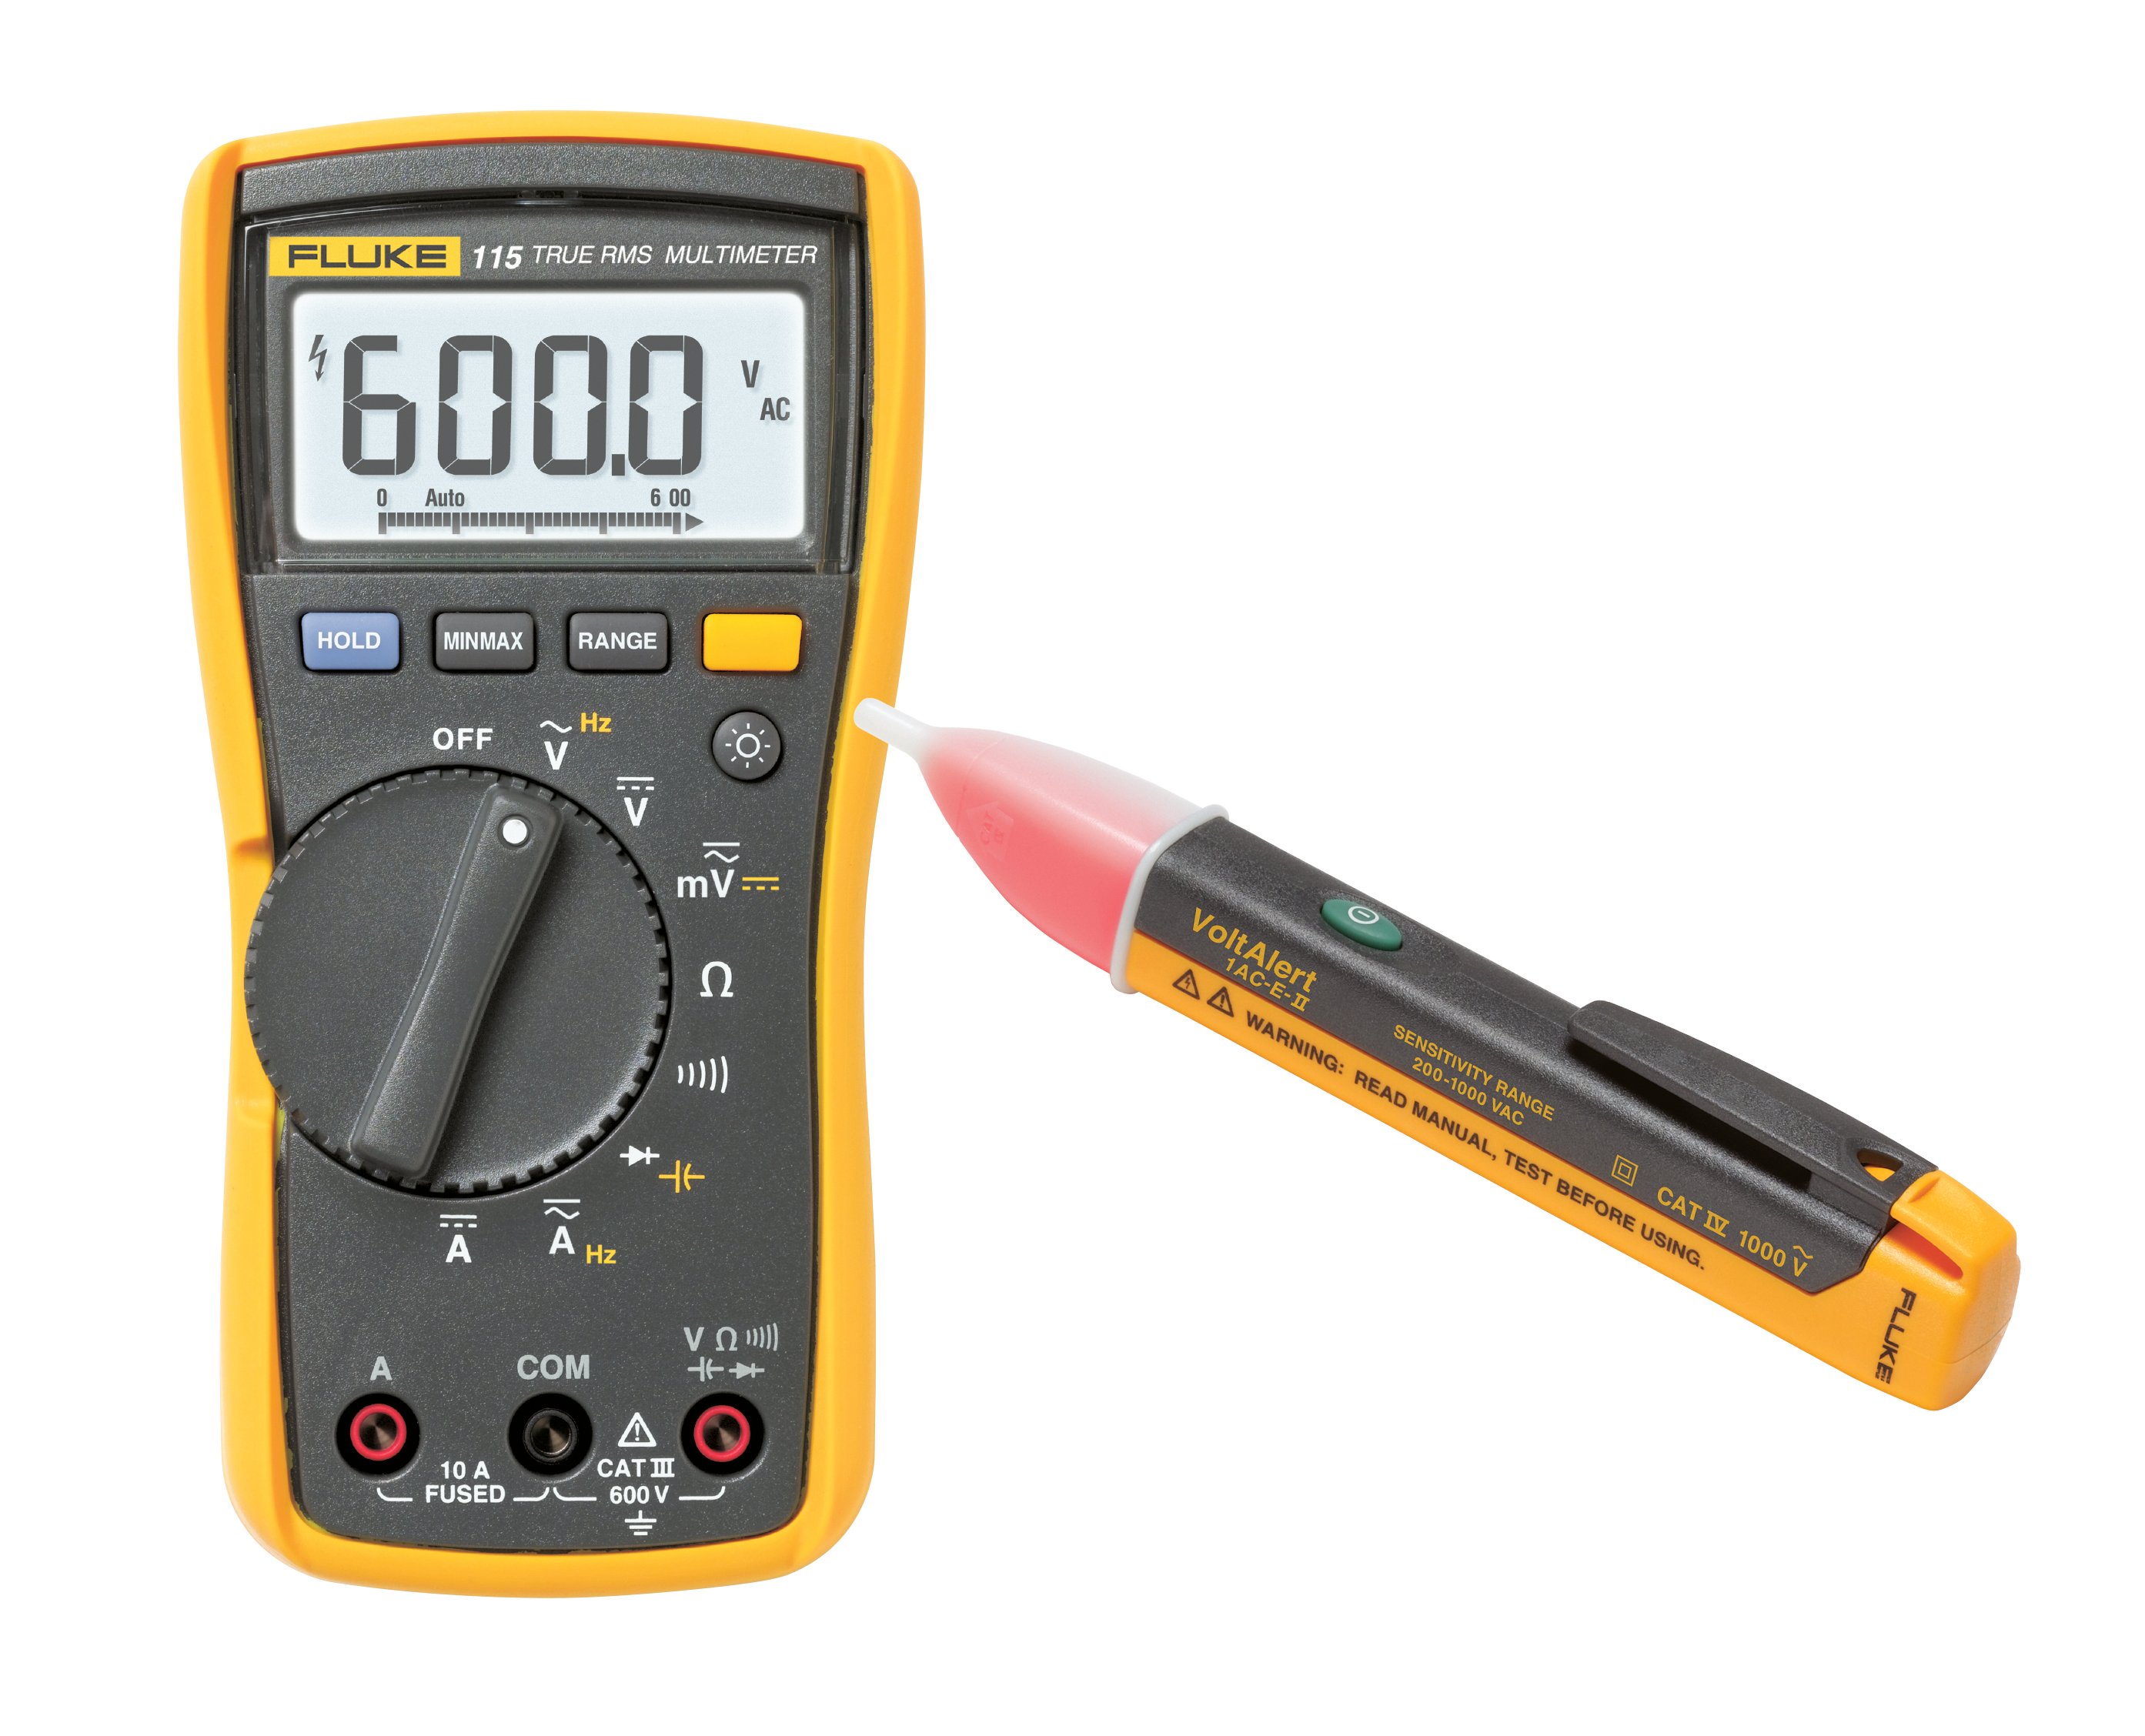 Multimètre numérique Fluke 115, avec un testeur de tension sans contact 1ACII GRATUIT